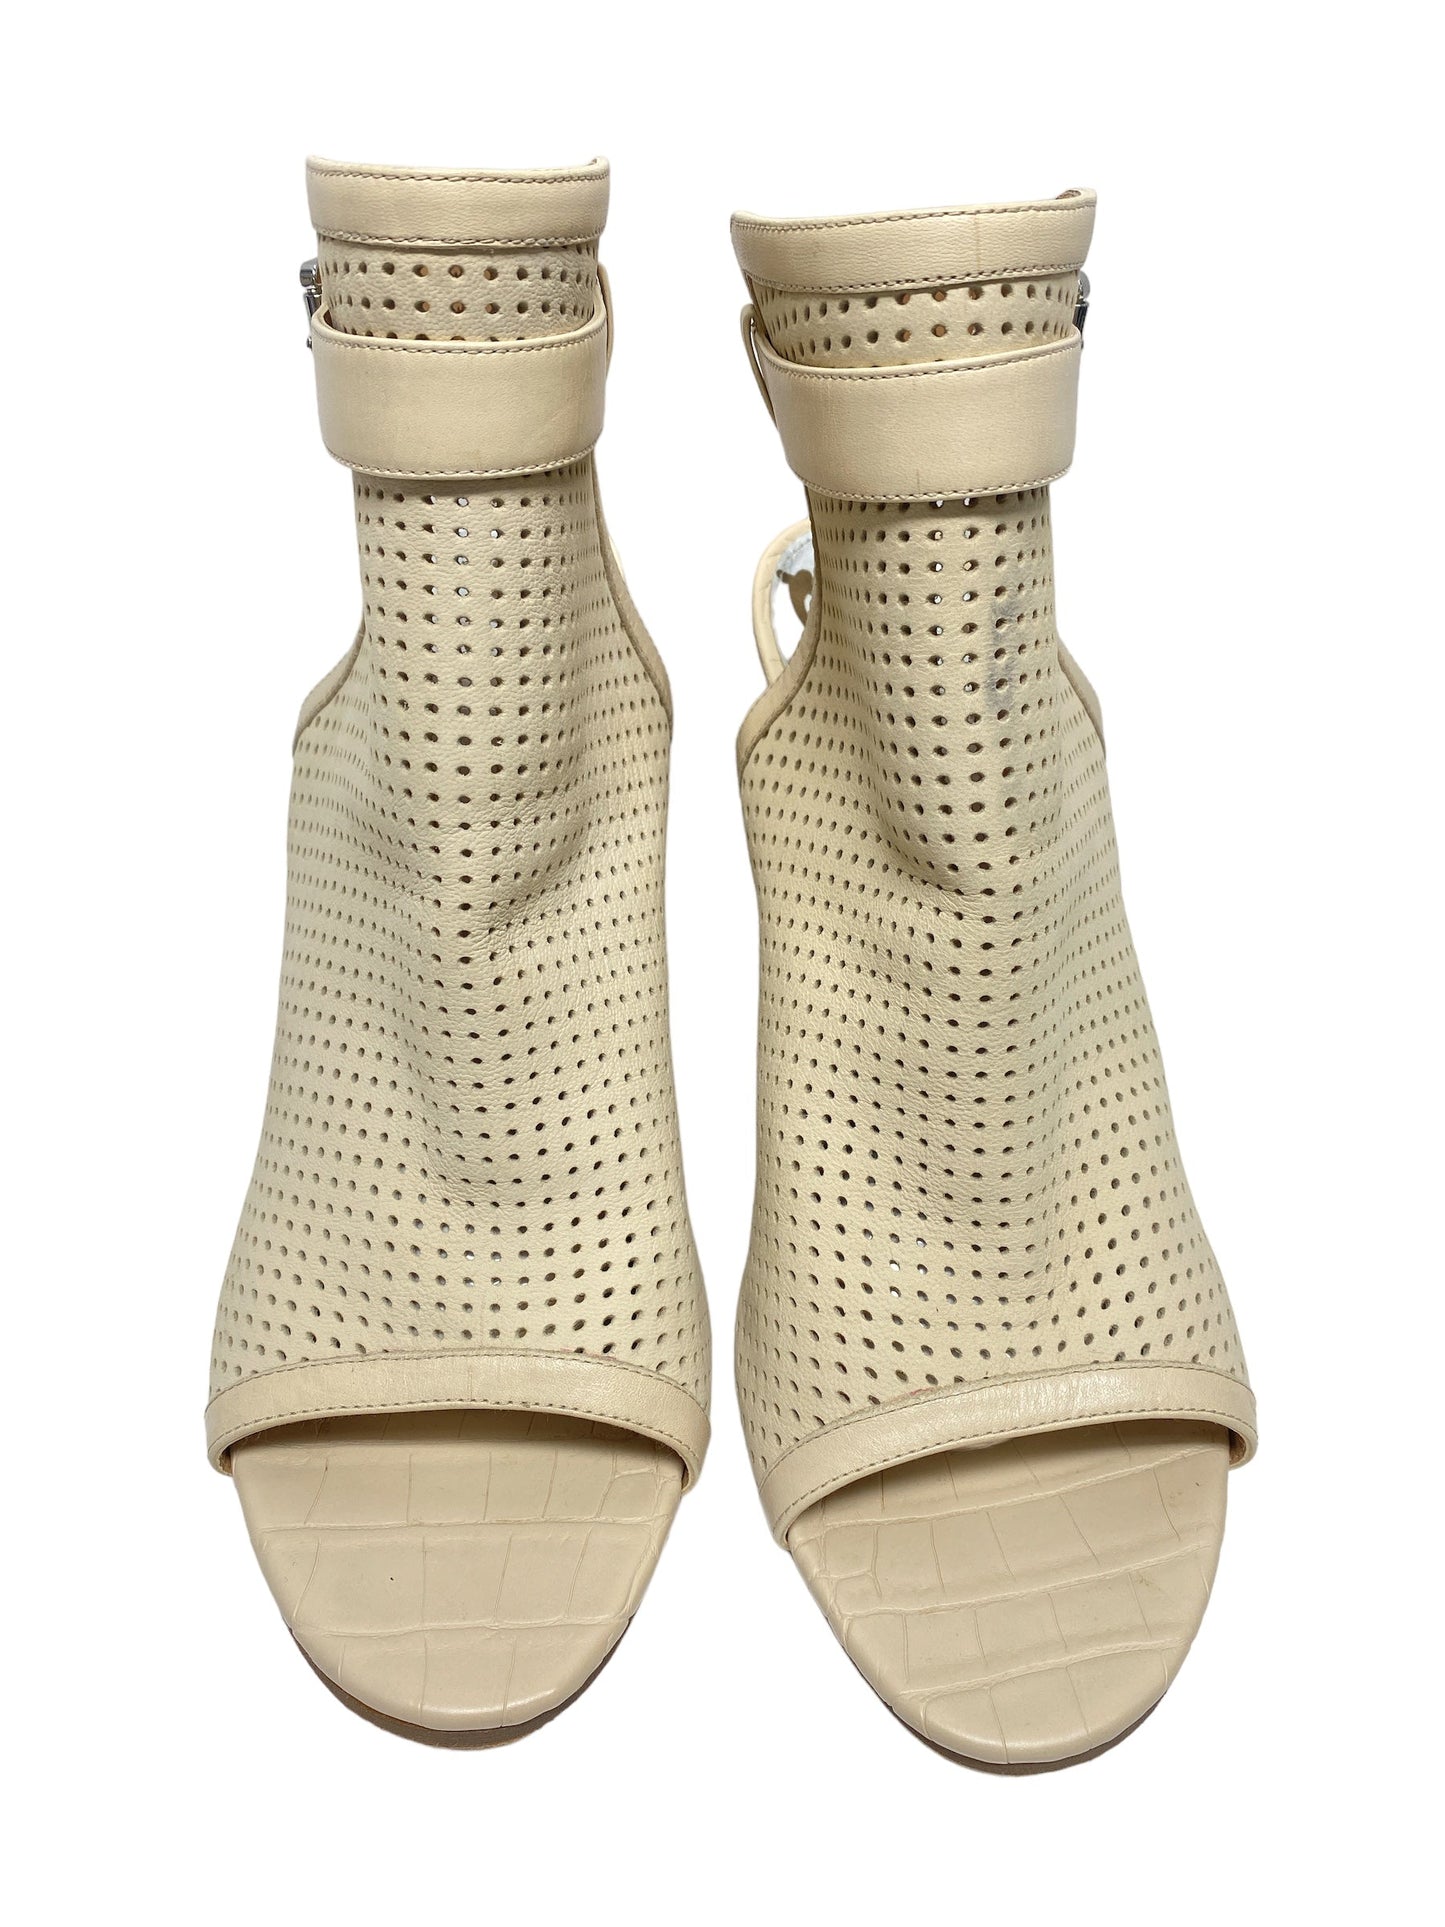 Sandals Designer By Sam Edelman  Size: 12